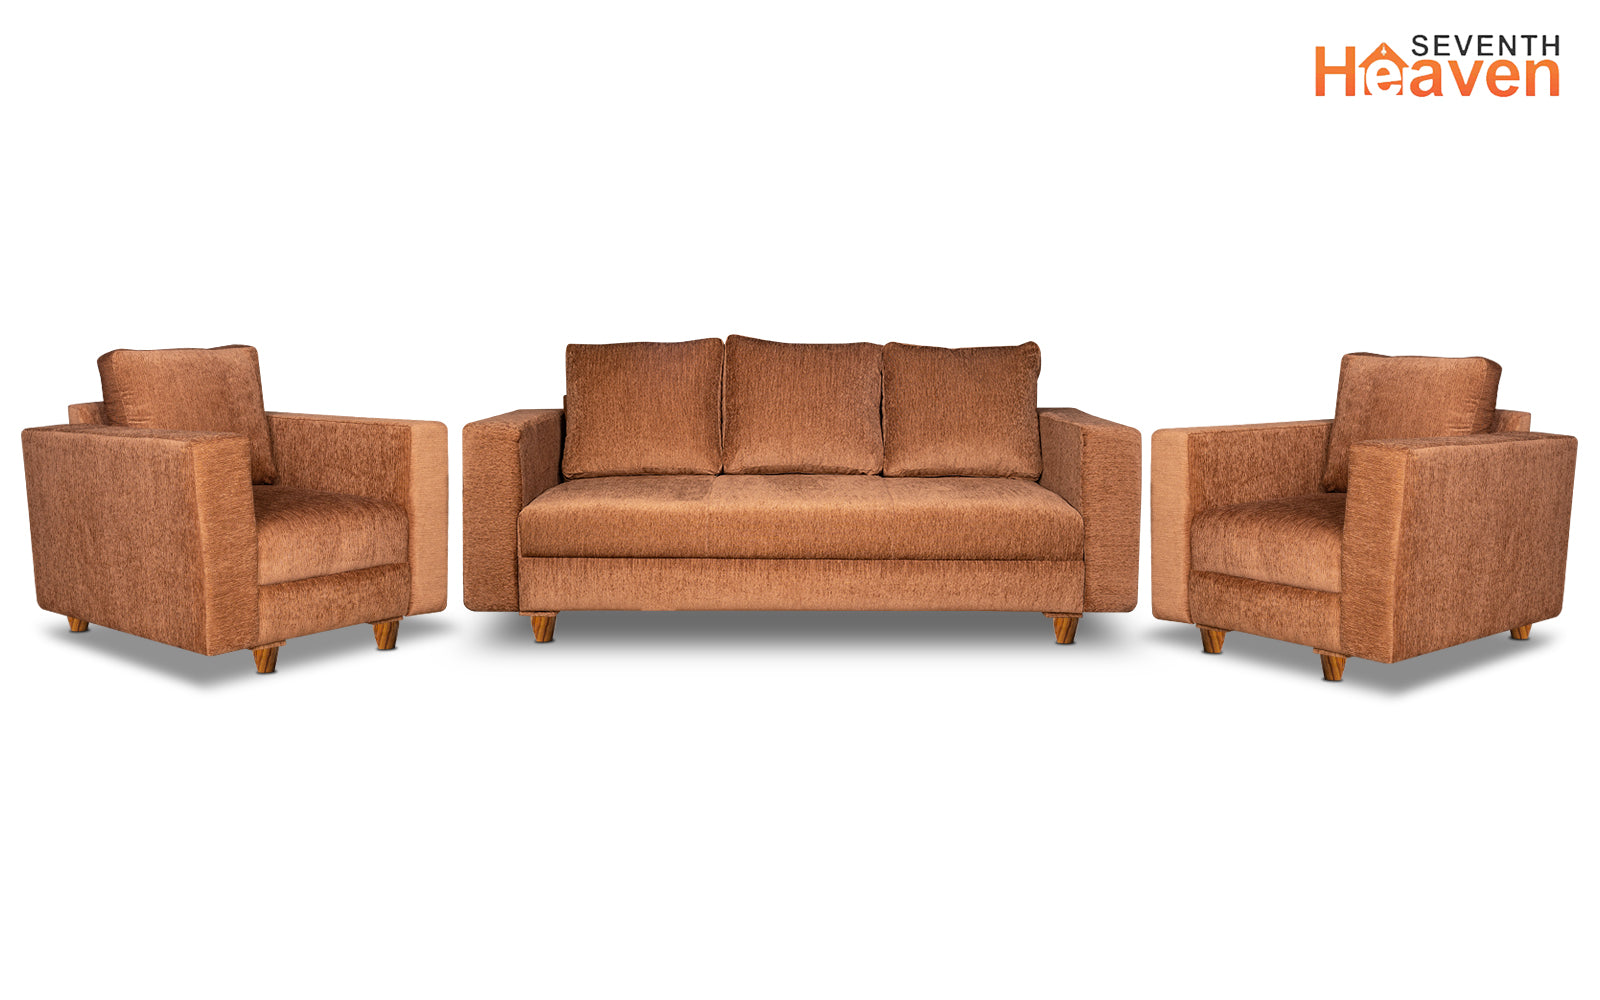 Rio 5 Seater Sofa Set, Chenille Molfino Fabric (Finish Color -Beige, Style - 3 + 1 + 1)